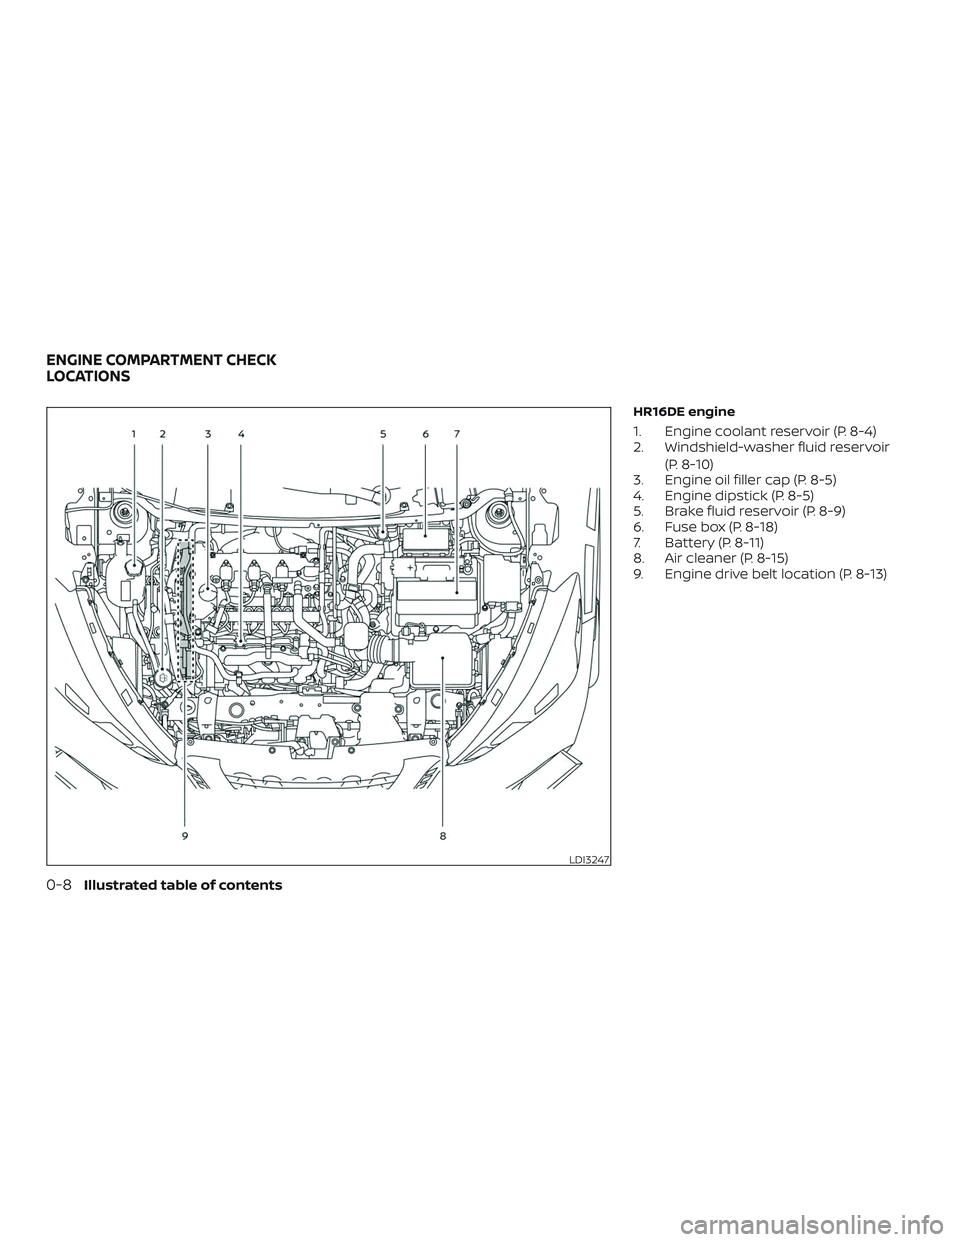 NISSAN KICKS 2019  Owner´s Manual HR16DE engine
1. Engine coolant reservoir (P. 8-4)
2. Windshield-washer fluid reservoir(P. 8-10)
3. Engine oil filler cap (P. 8-5)
4. Engine dipstick (P. 8-5)
5. Brake fluid reservoir (P. 8-9)
6. Fuse